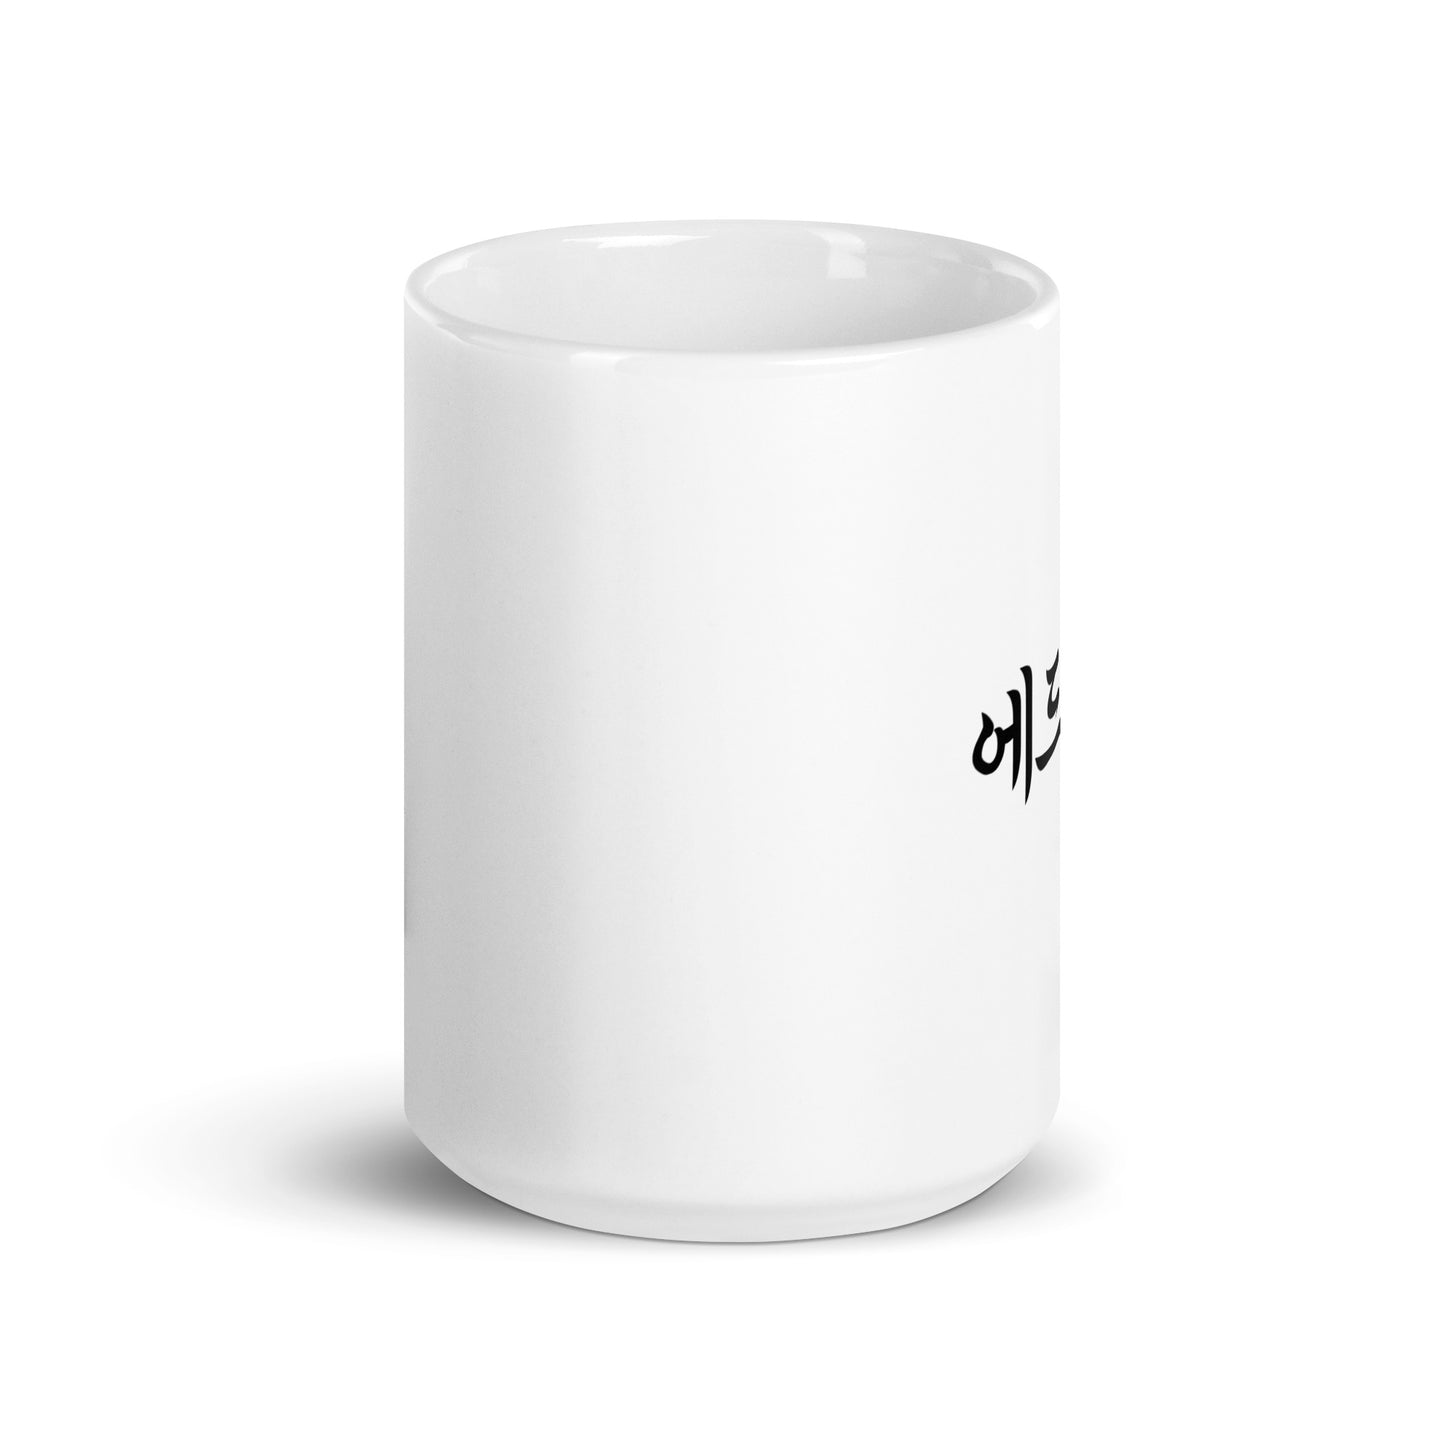 Edward in Hangul Custom Name Gift Ceramic Mug